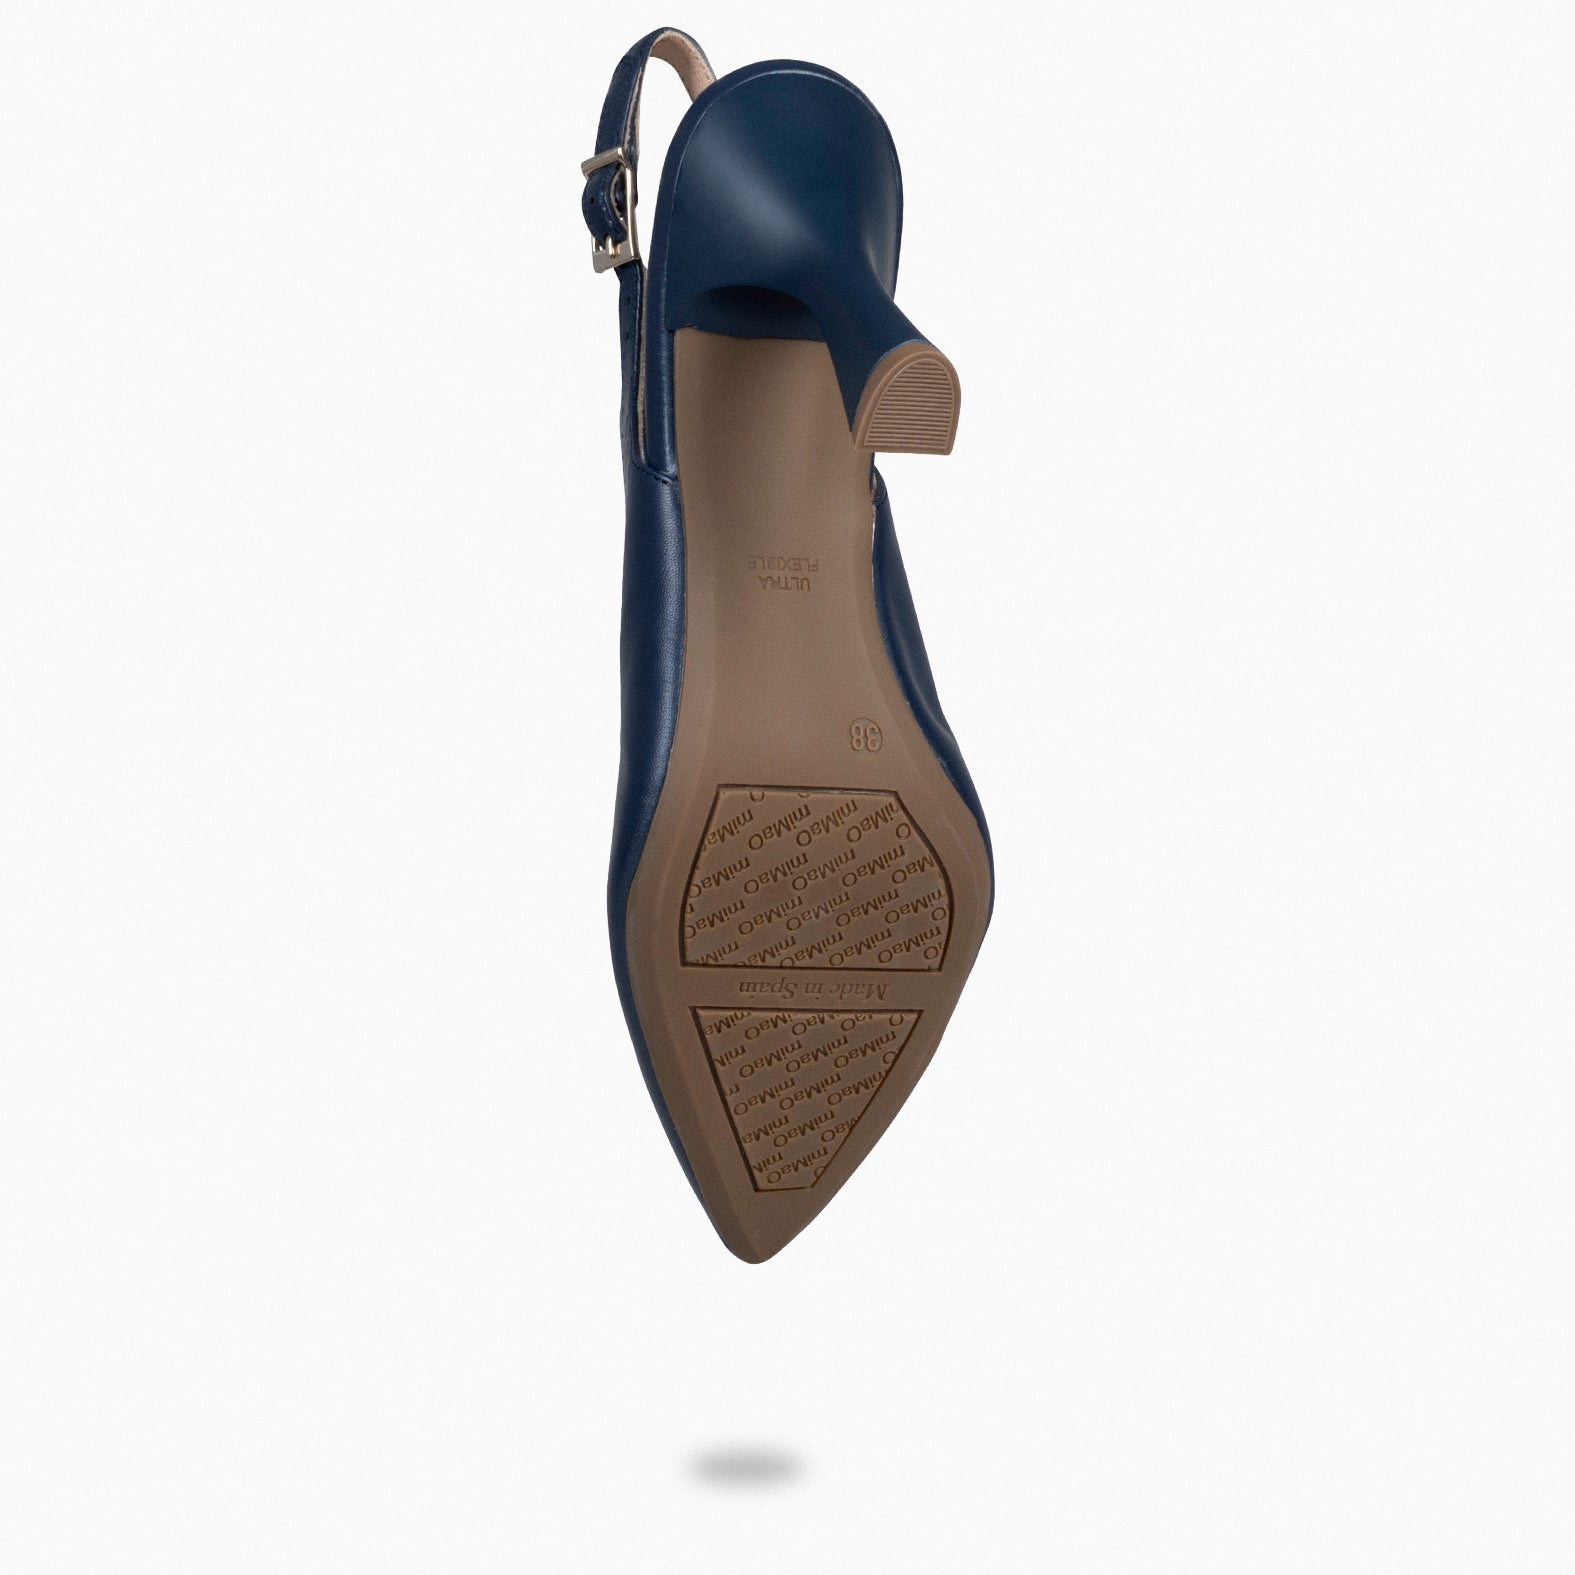 GLAM SLINGBACKS – Chaussures à talon en cuir BLEU MARINE